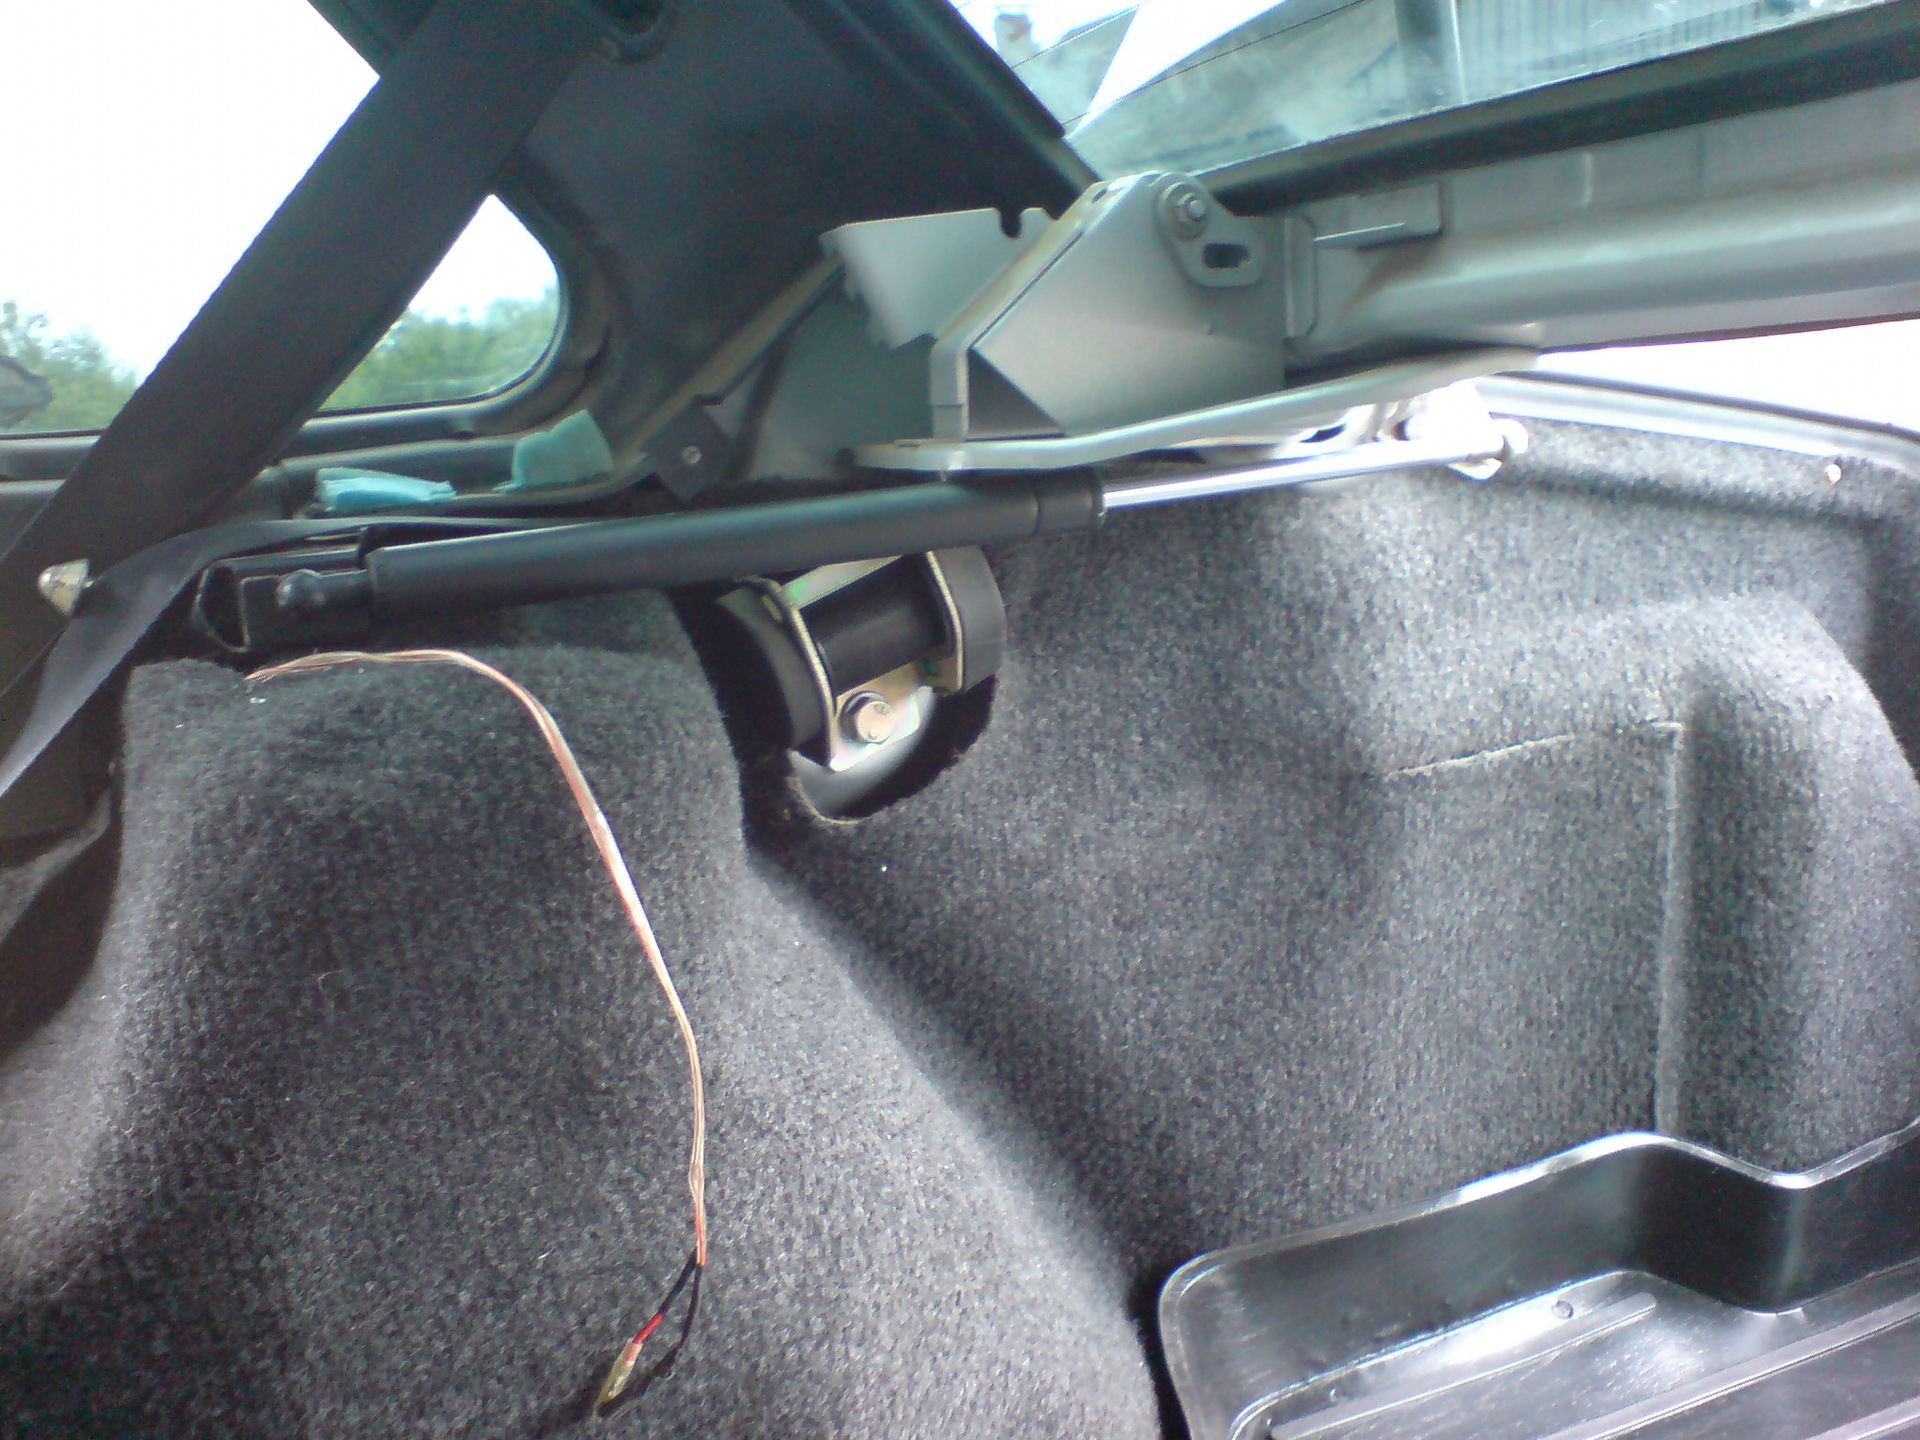 Ваз 2115 обшивка крышки багажника своими руками